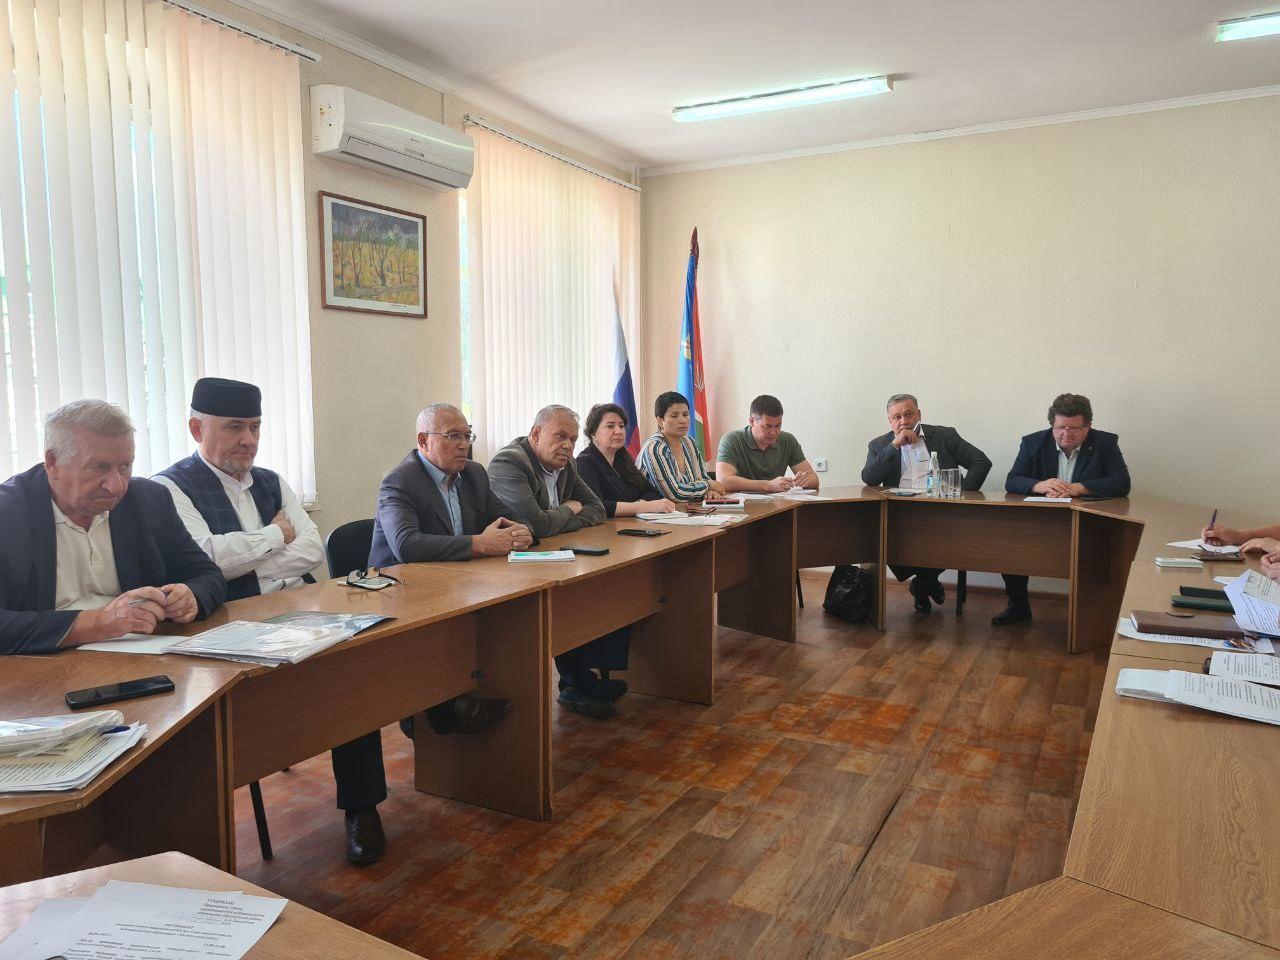 Сегодня провели заседание Совета национальностей Мелекесского района.